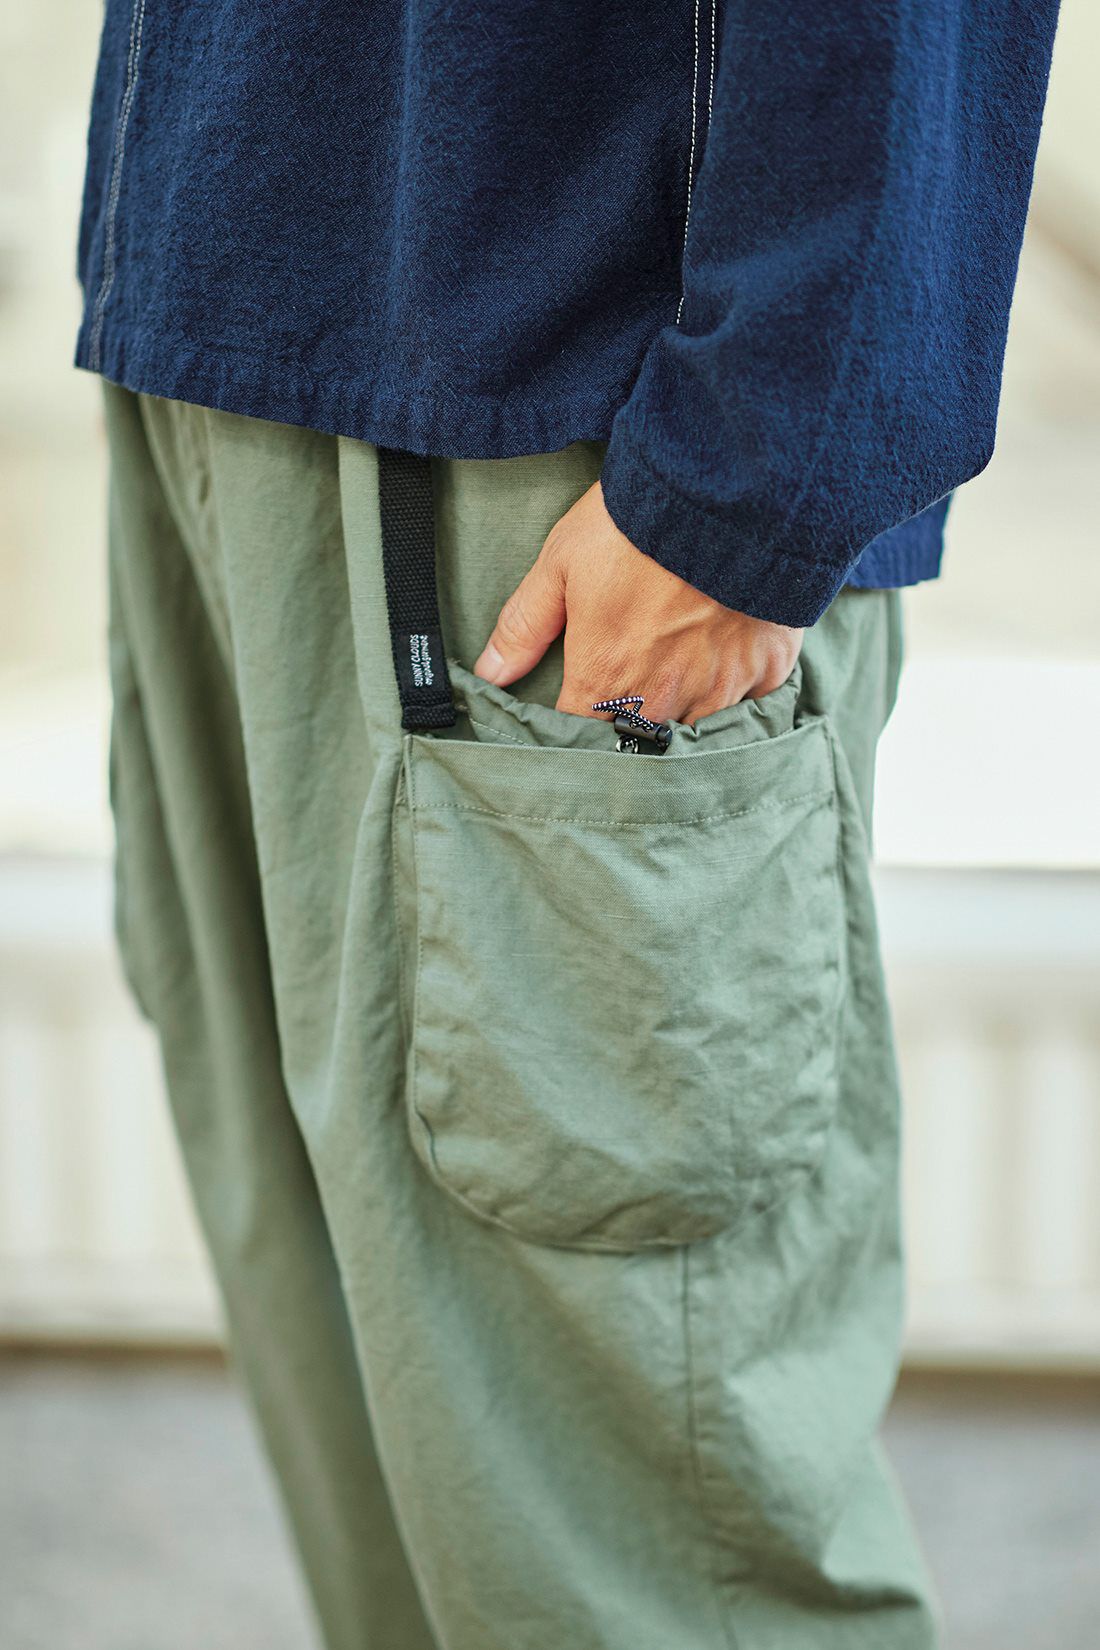 サニークラウズ|サニークラウズ クライミングカーゴパンツ〈メンズ〉グリーンカーキ|アジャスター付きポケットと大きなポケットがアクセント。